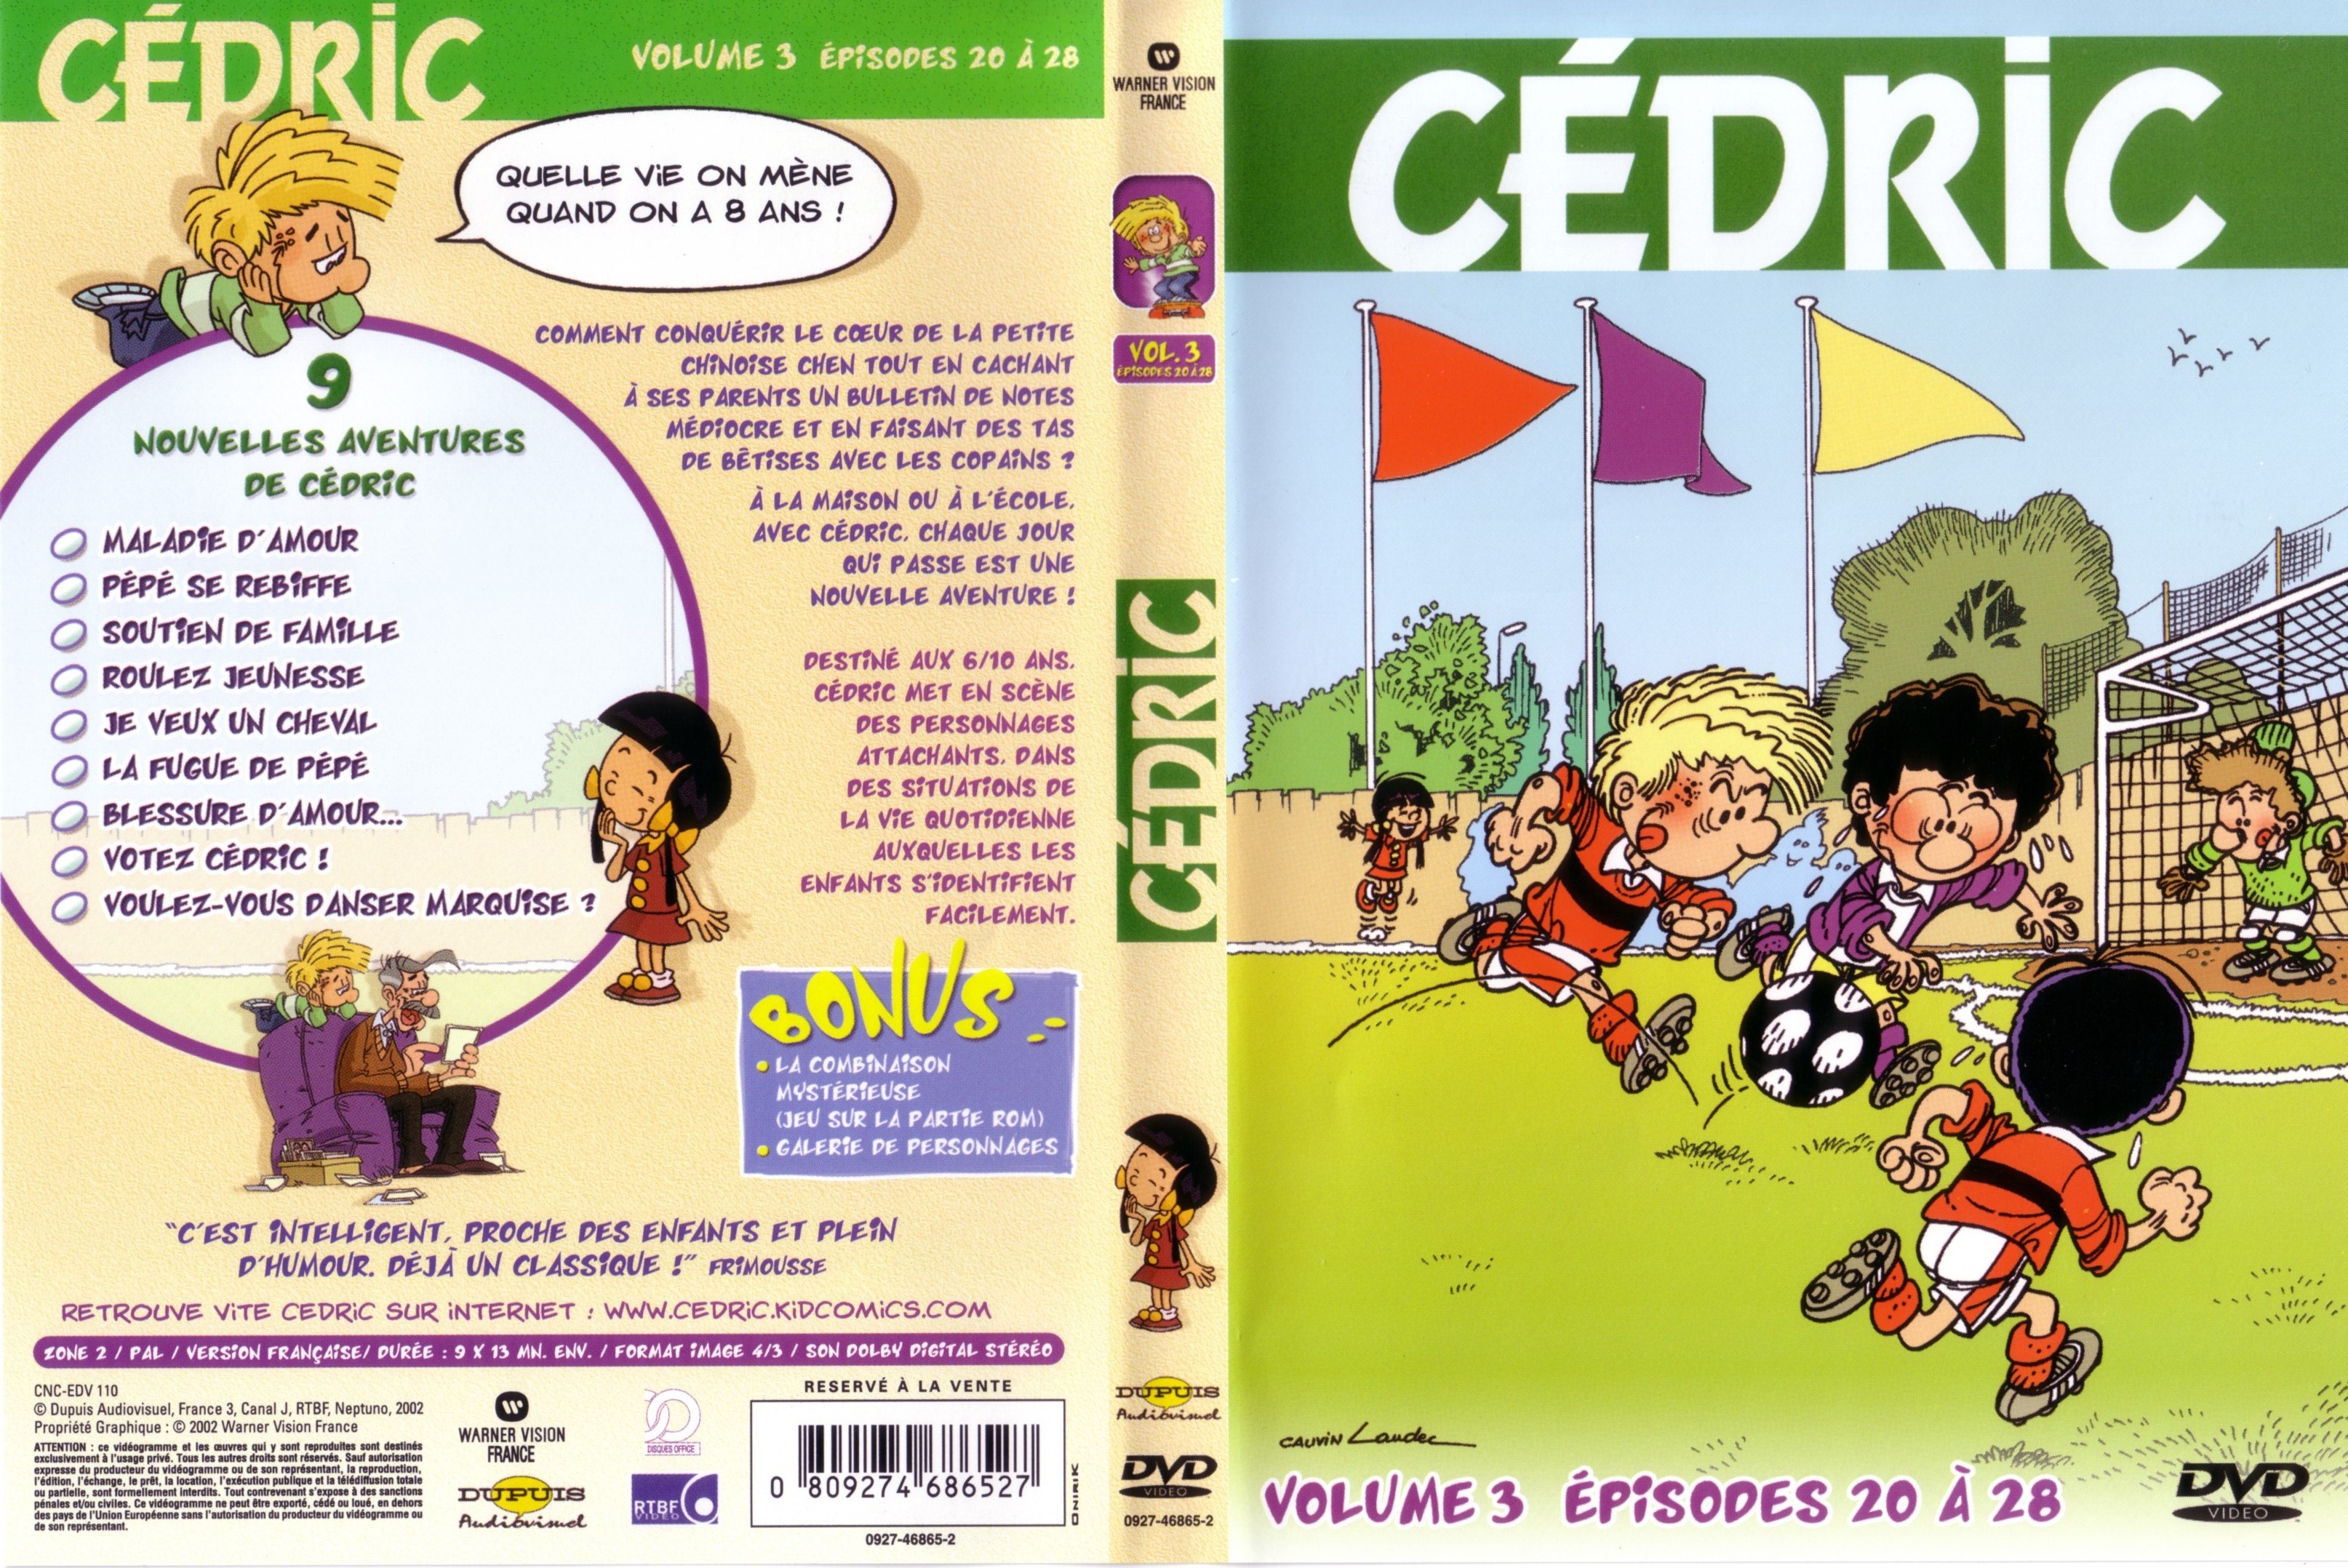 Jaquette DVD Cedric vol 3